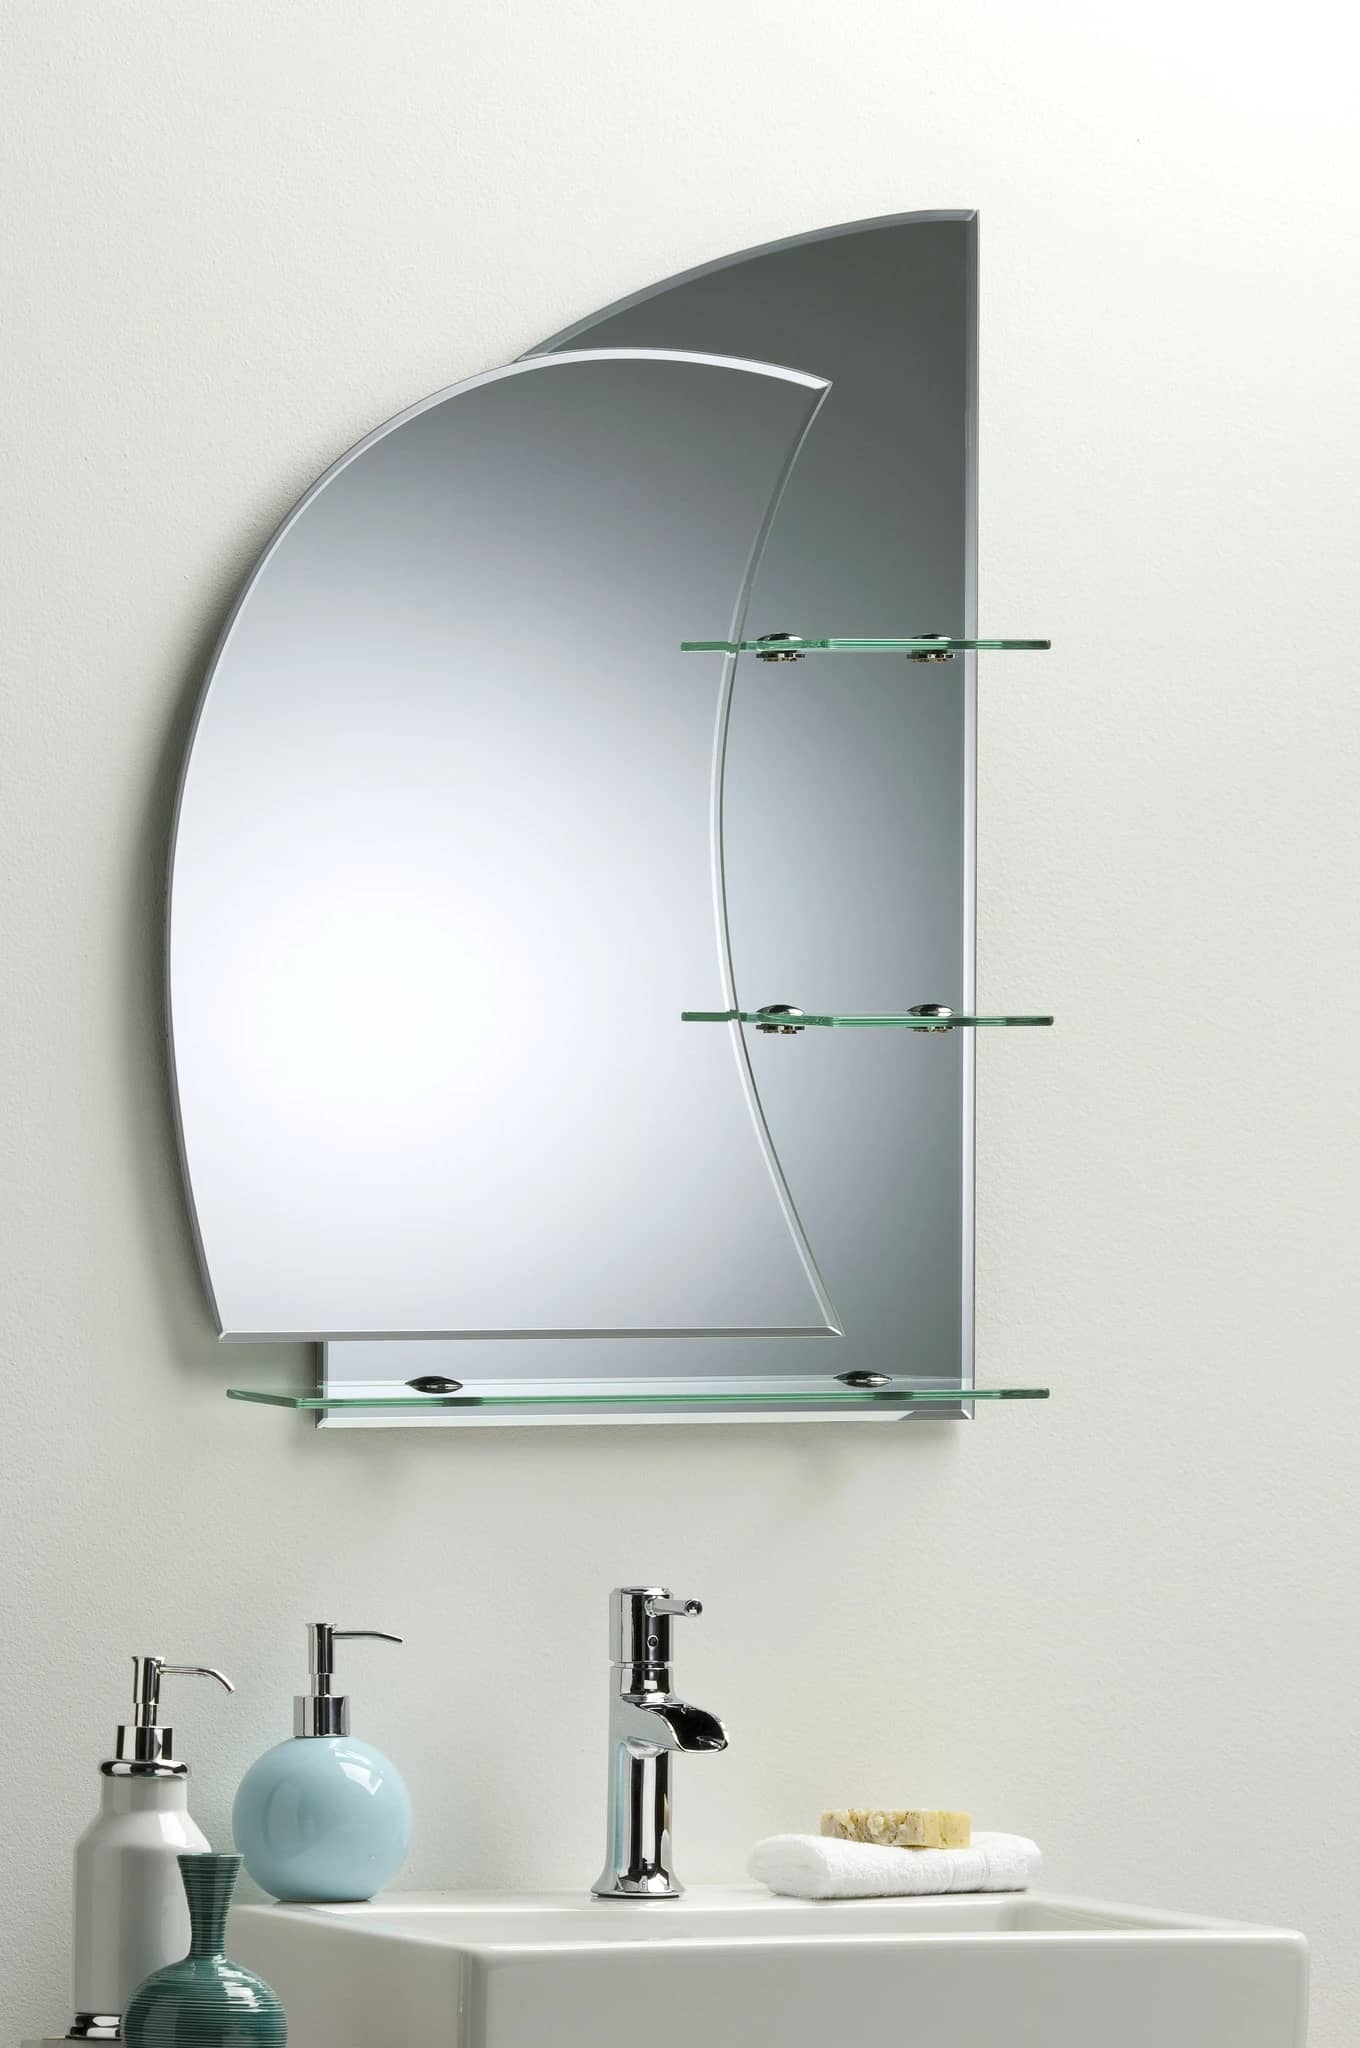 Зеркала и мебель для ванны. Зеркало с полкой 610*740 "роса". Зеркало Парус nnlm16. Зеркало для ванной комнаты. Зеркала в ванную комнату с полочками.